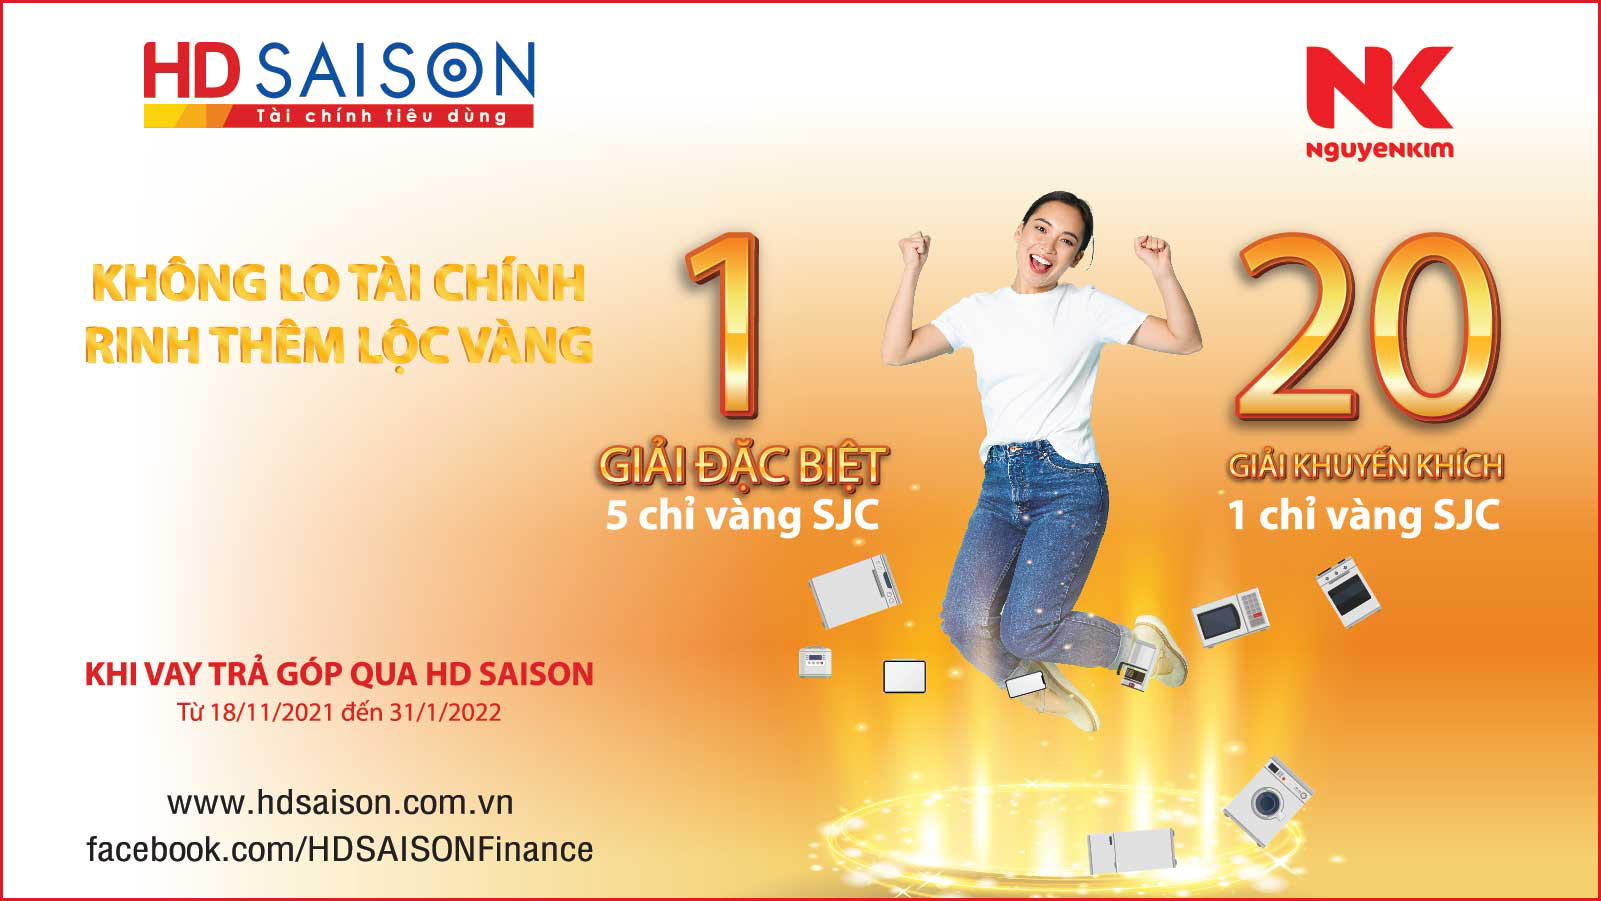 HD SAISON tặng vàng cho khách hàng vay mua sản phẩm điện máy trả góp tại Nguyễn Kim